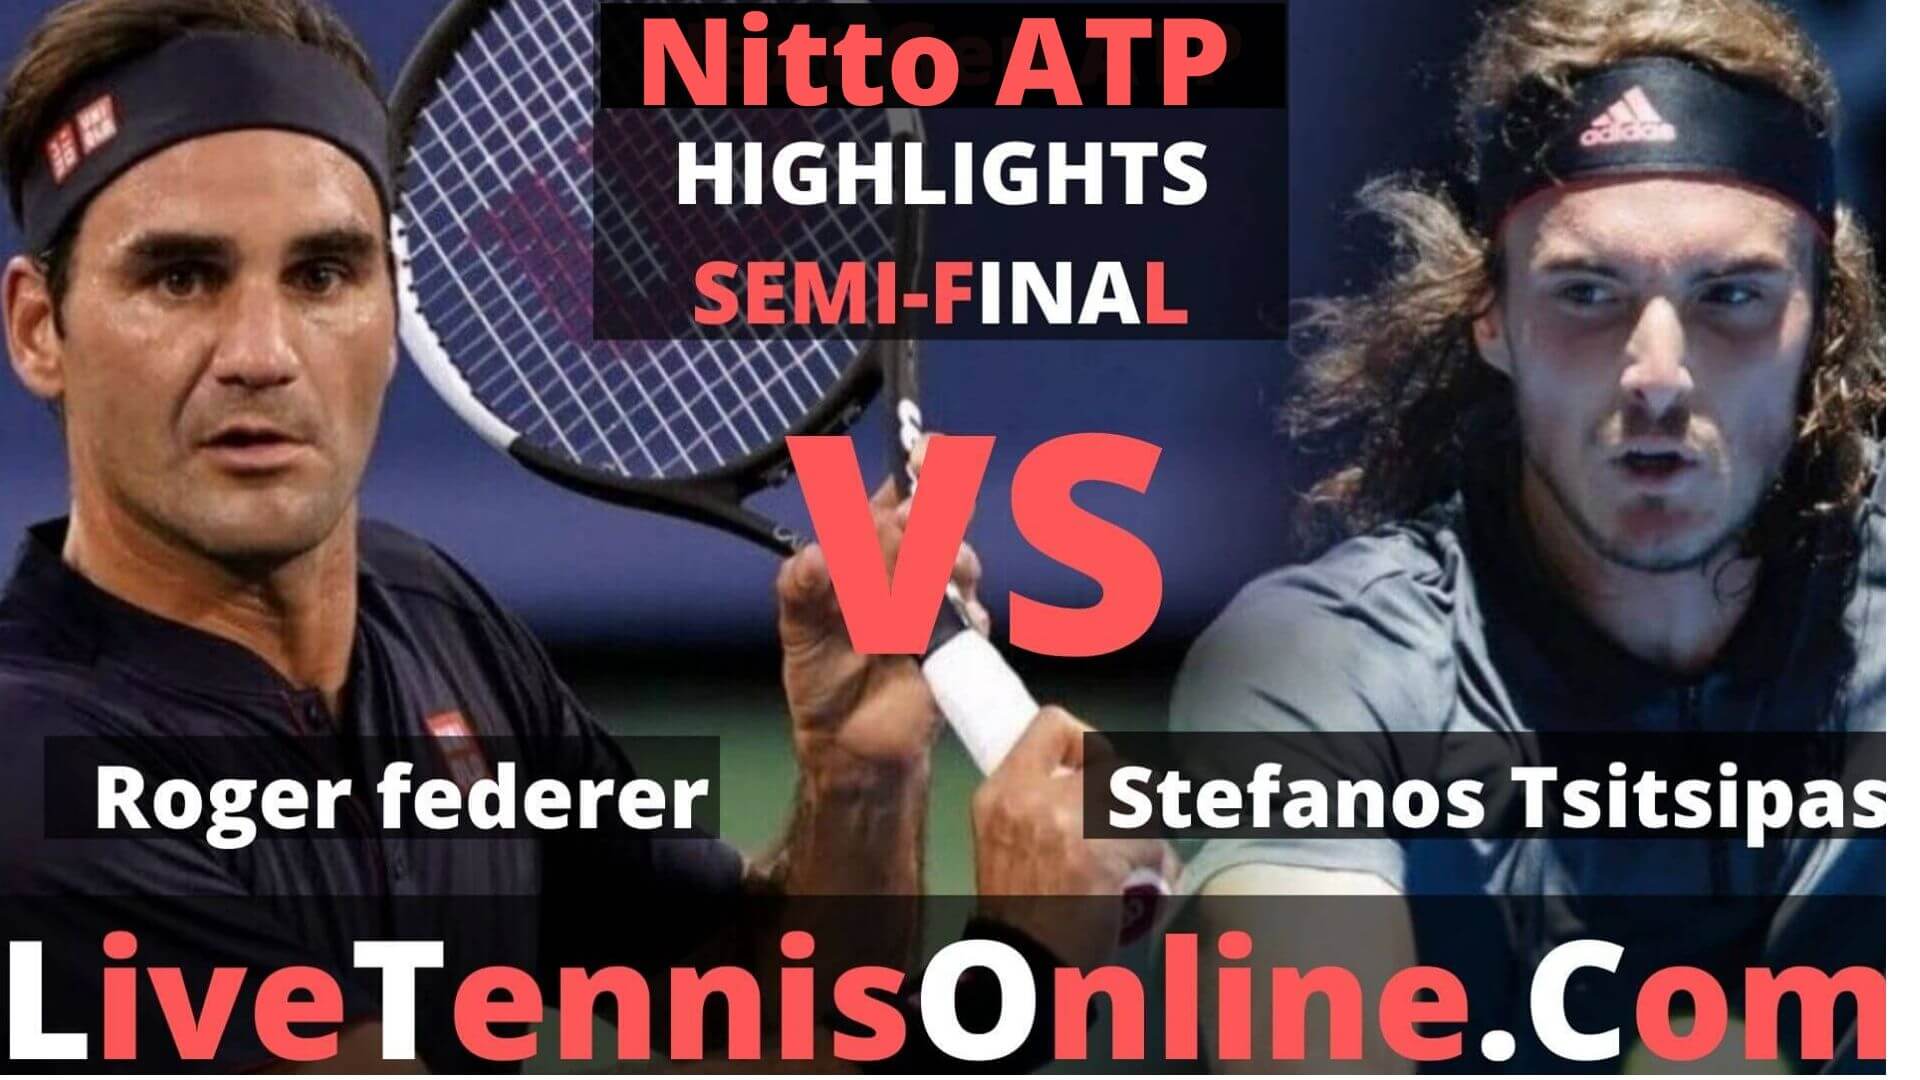 Stefanos Tsitsipas Vs Roger Federer Highlights 2019 Nitto ATP SF